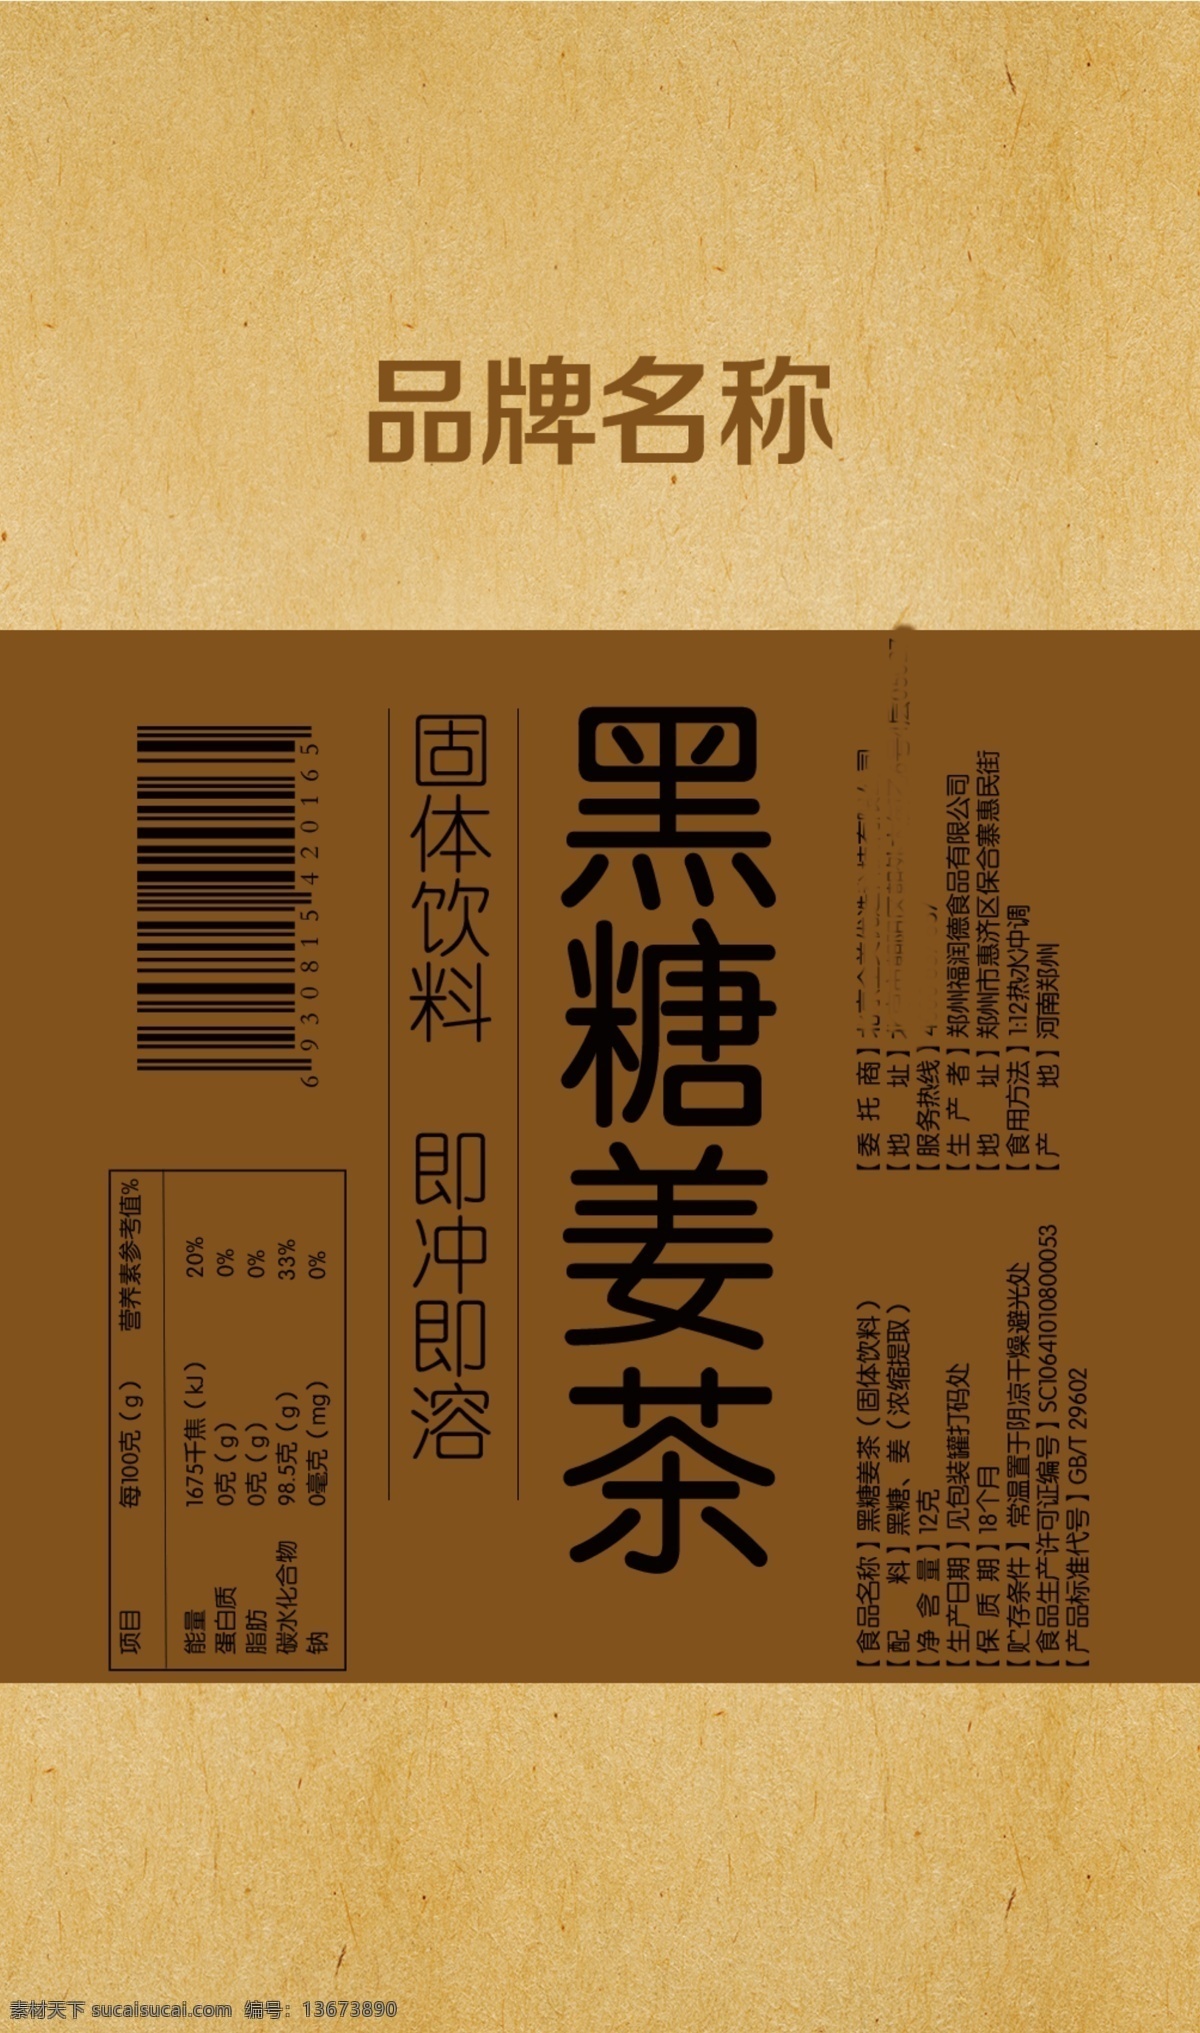 黑糖姜茶 草纸 材质 包装 姜茶 黑糖